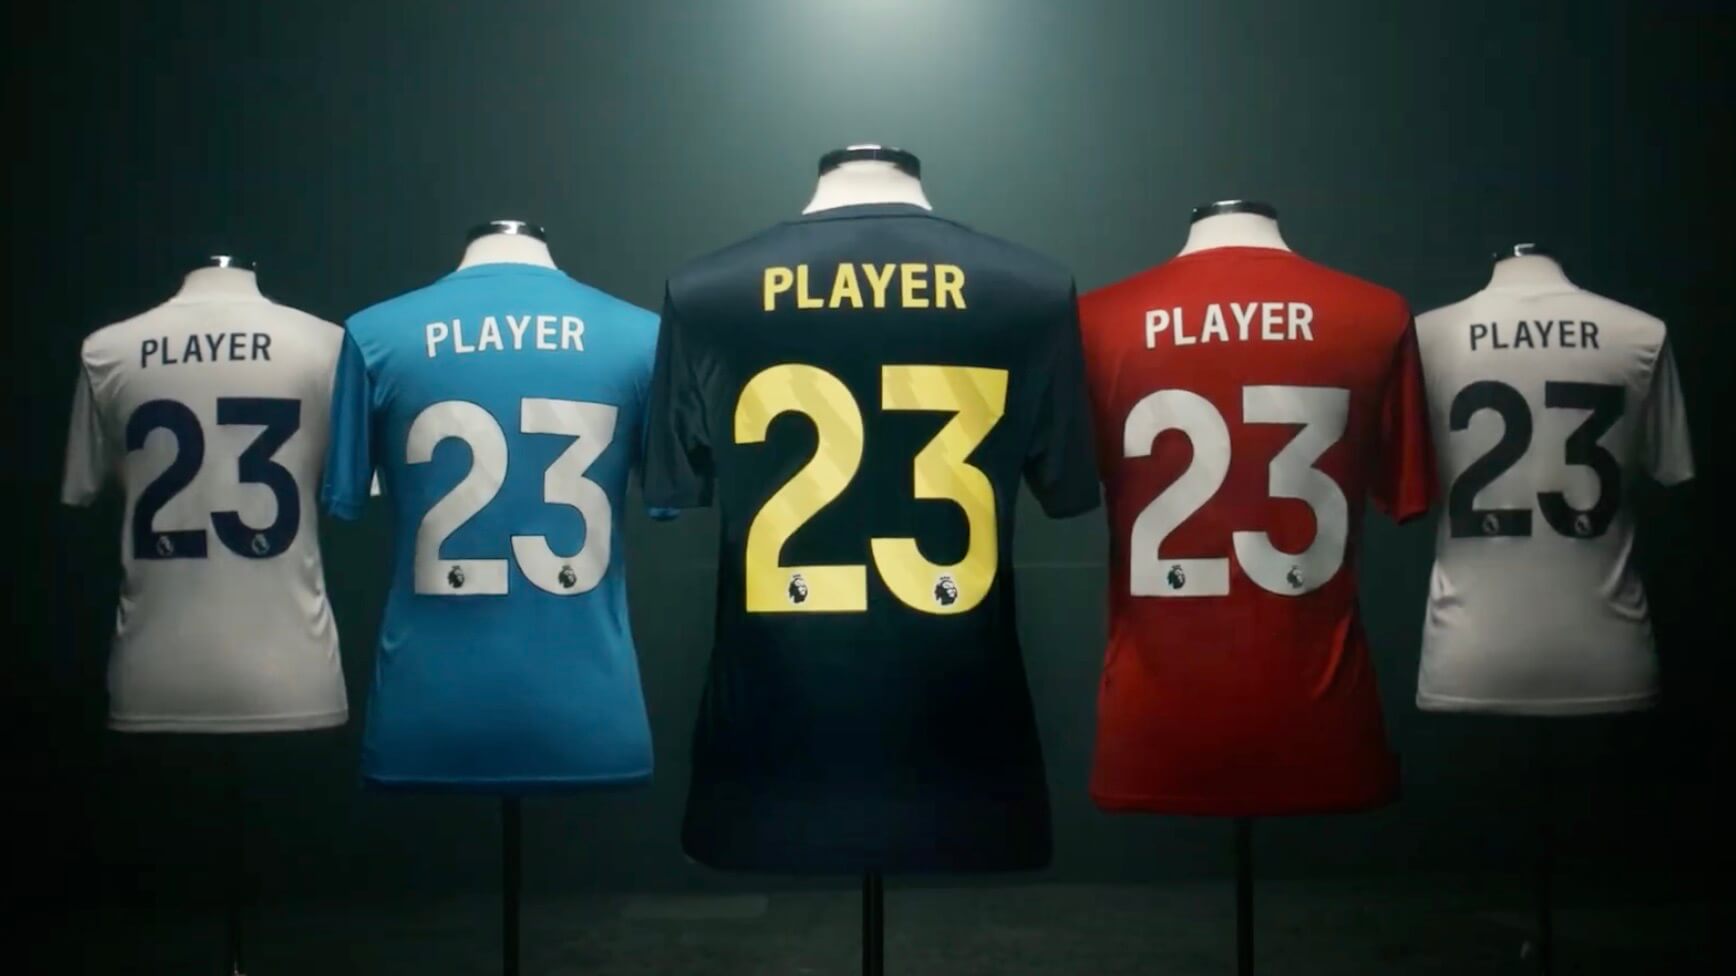 Premier League Announces New Font, Sleeve Logo for 2023-24